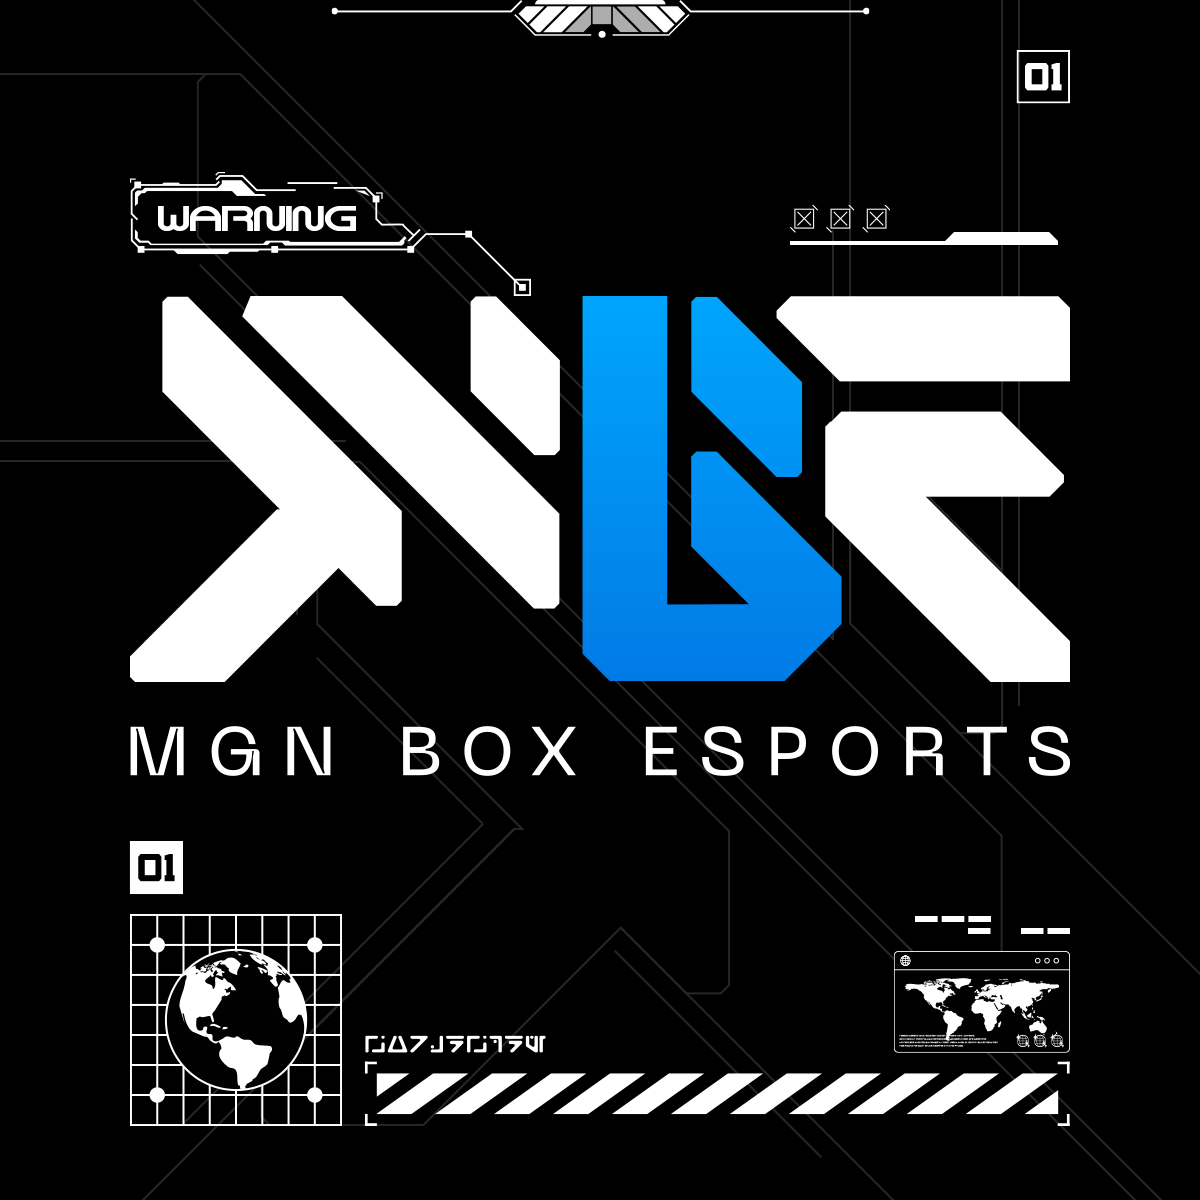 Team Flash và MGN Box Esports (MBE) tranh tài với 14 đội tuyển châu Á tại giải đấu hơn 1.5 tỷ đồng tiền thưởng